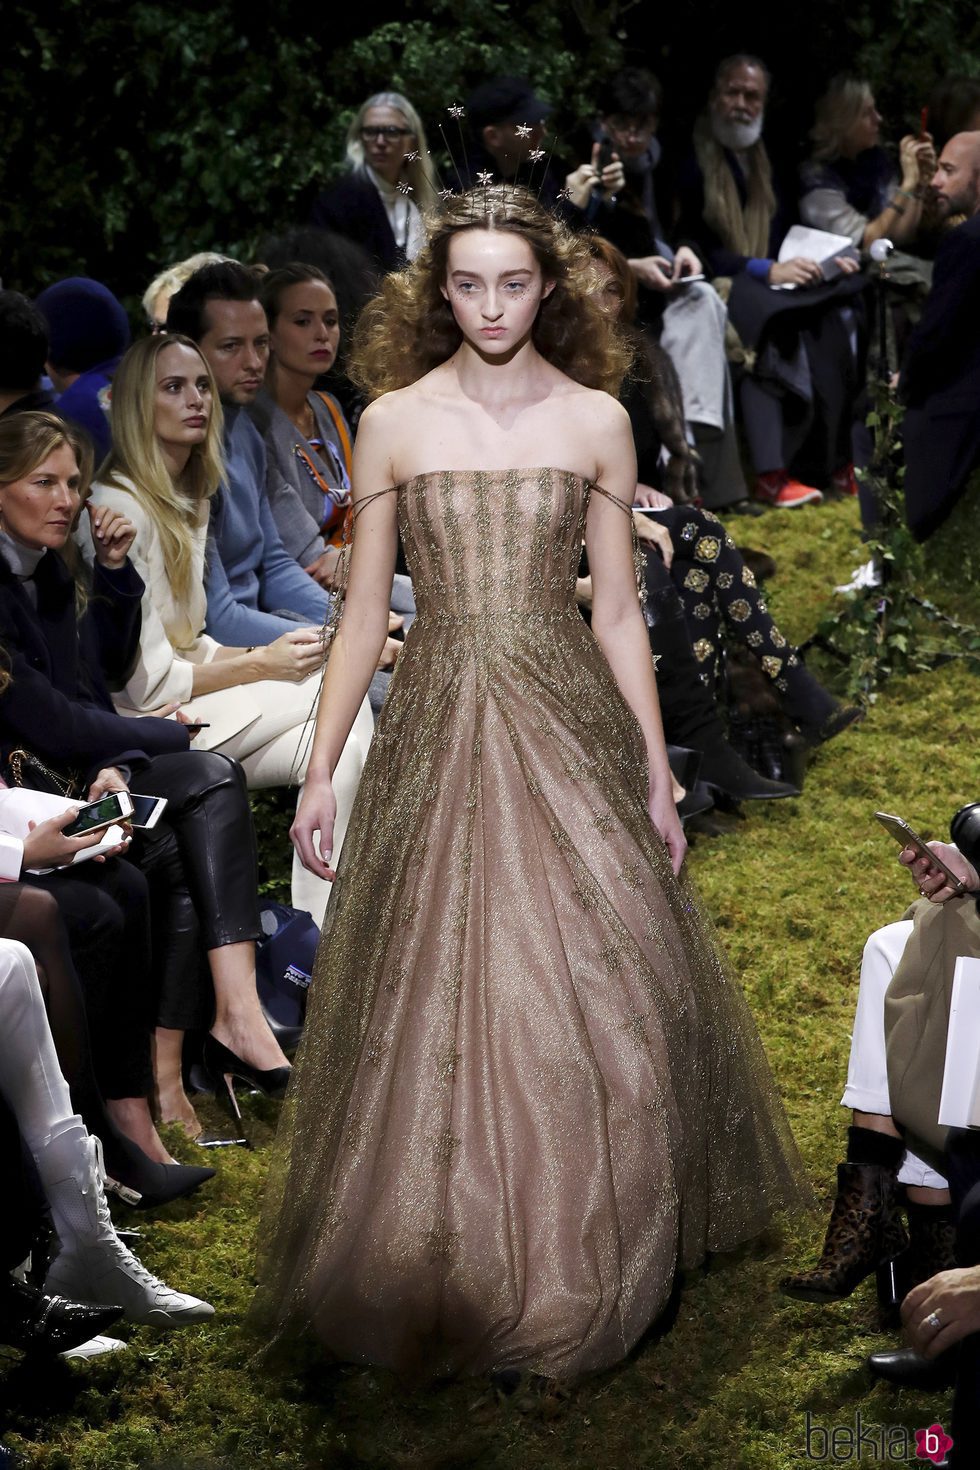 Vestido en dorado y detalles brillantes de Dior en la Semana de la Alta Costura de París primavera/verano 2017